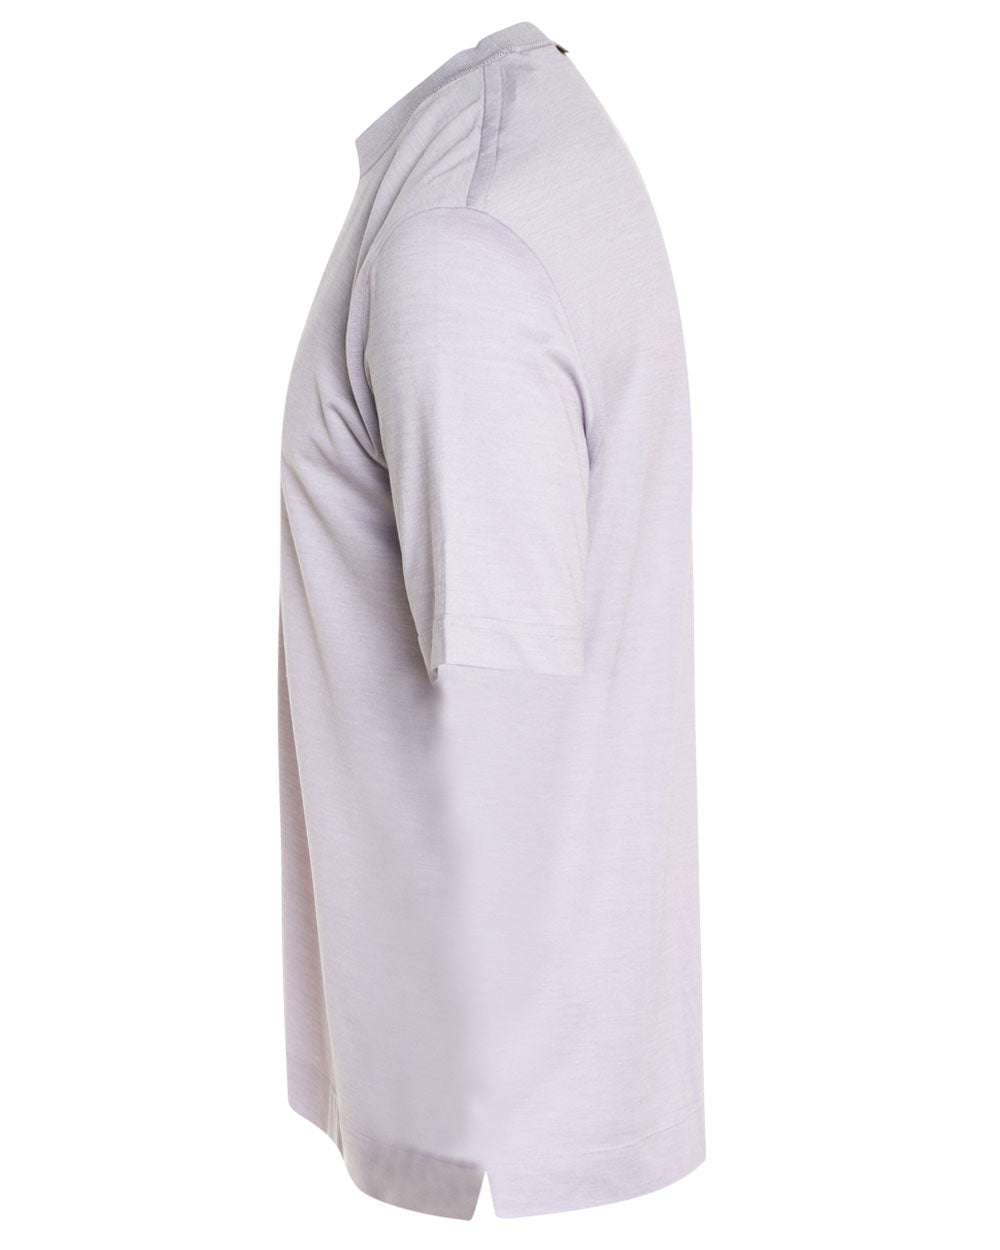 Light Purple Leggerissimo Short Sleeve T-Shirt